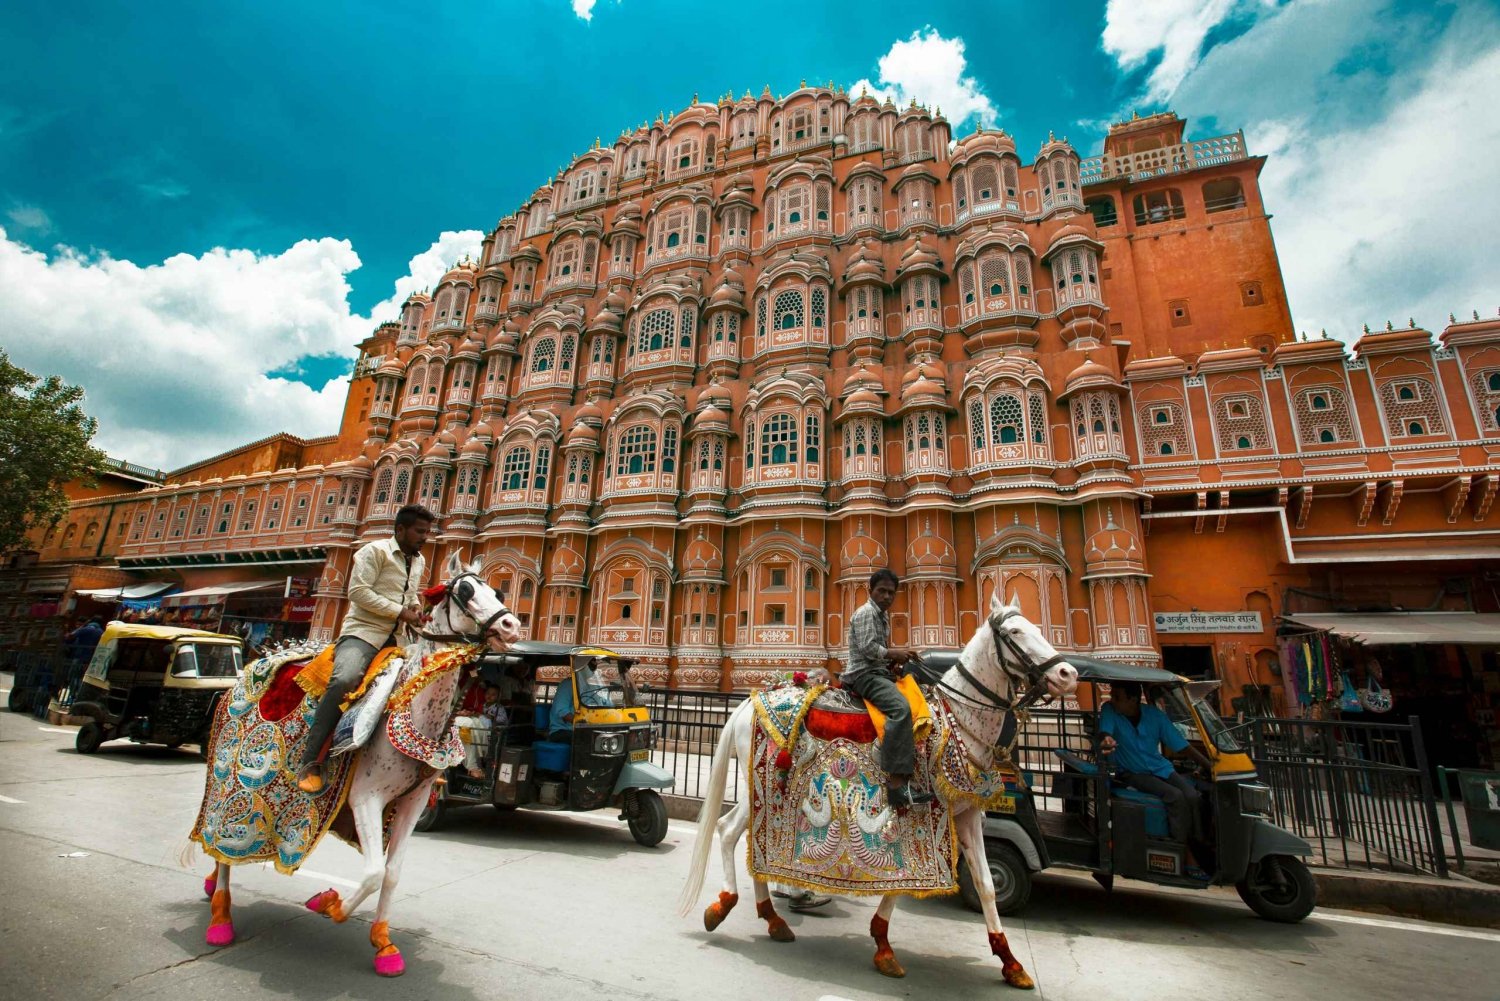 De Délhi: Excursão de mesmo dia a Jaipur saindo de Délhi - Tudo incluído